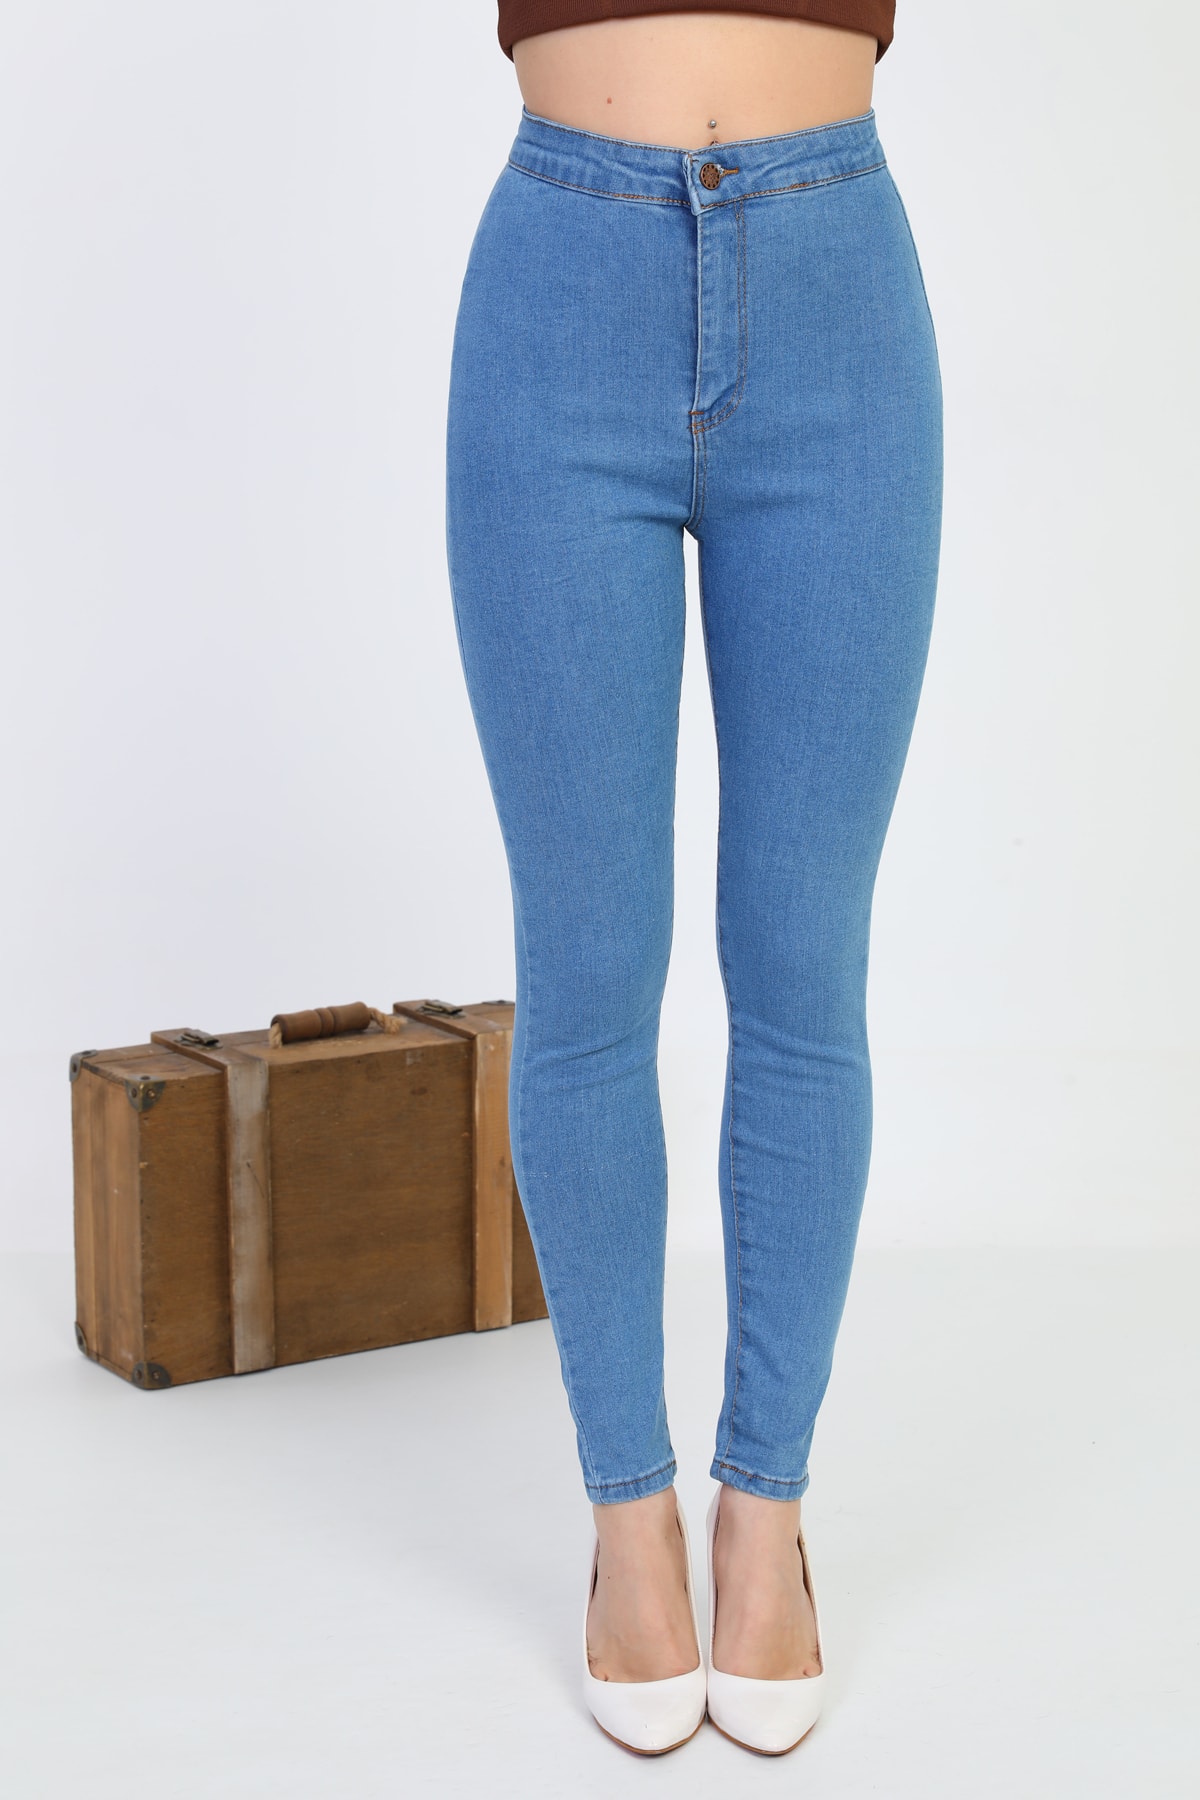 Levně BİKELİFE Women's Blue Lycra High Waist Denim Leggings Trousers